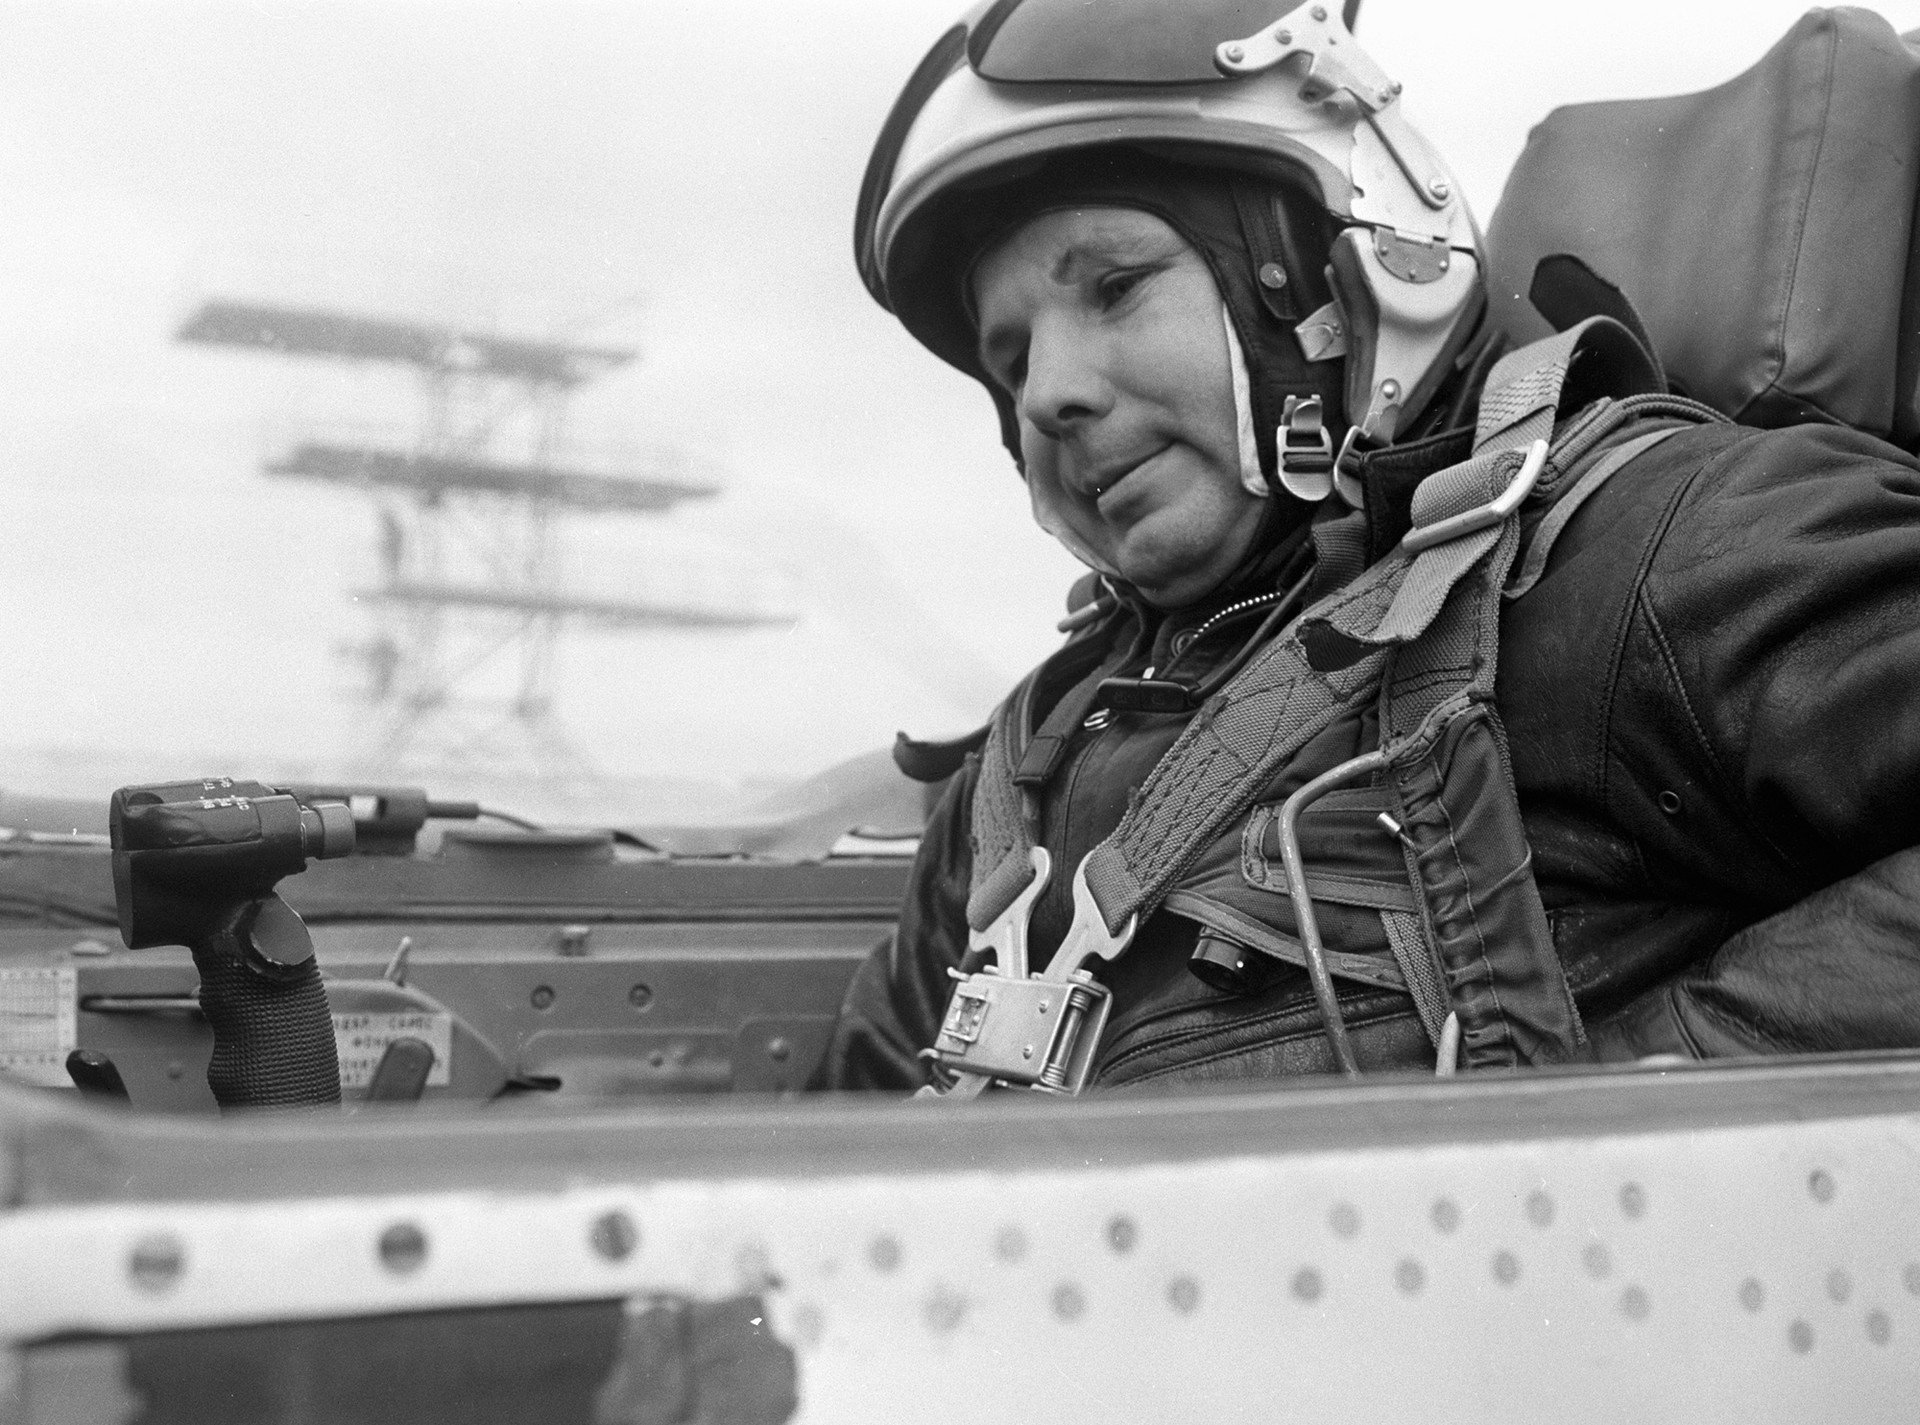 Јуриј Гагарин се спрема да изврши задатак на суперсоничном млазном ловцу МиГ-21, 1. октобар 1967.